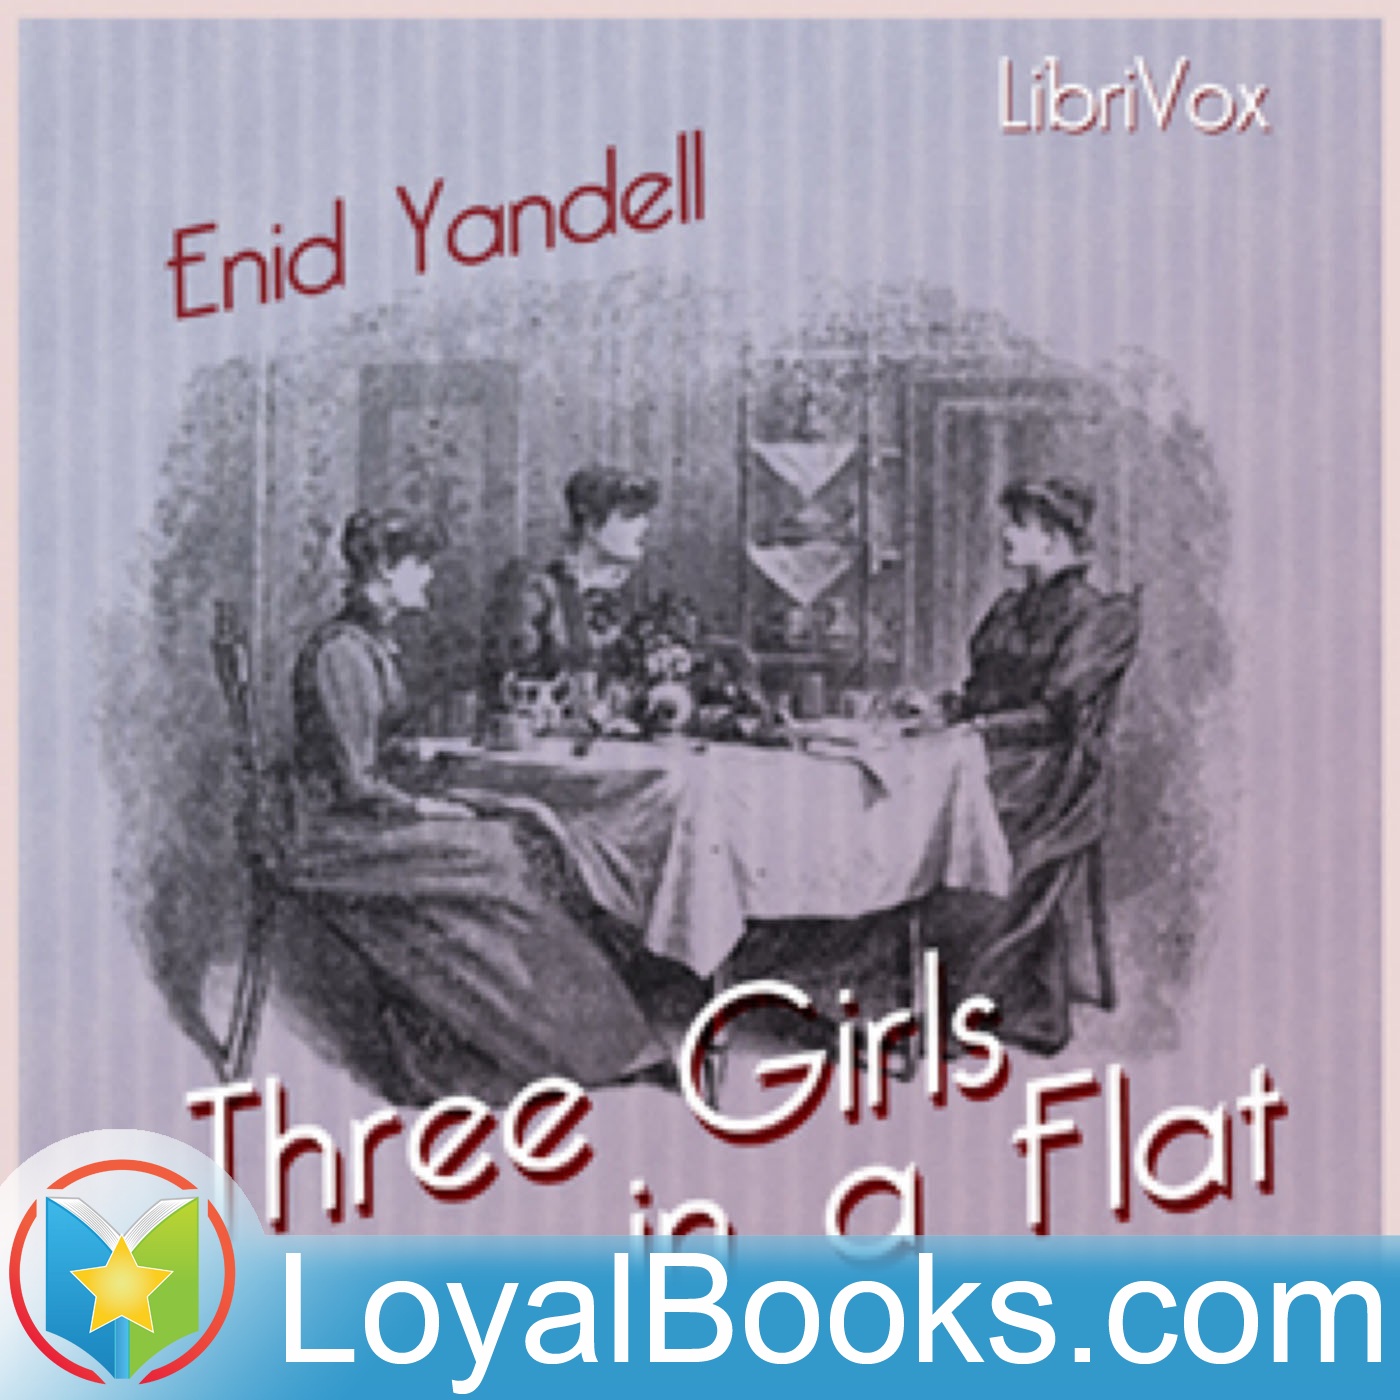 Three Girls in a Flat by Enid Yandell